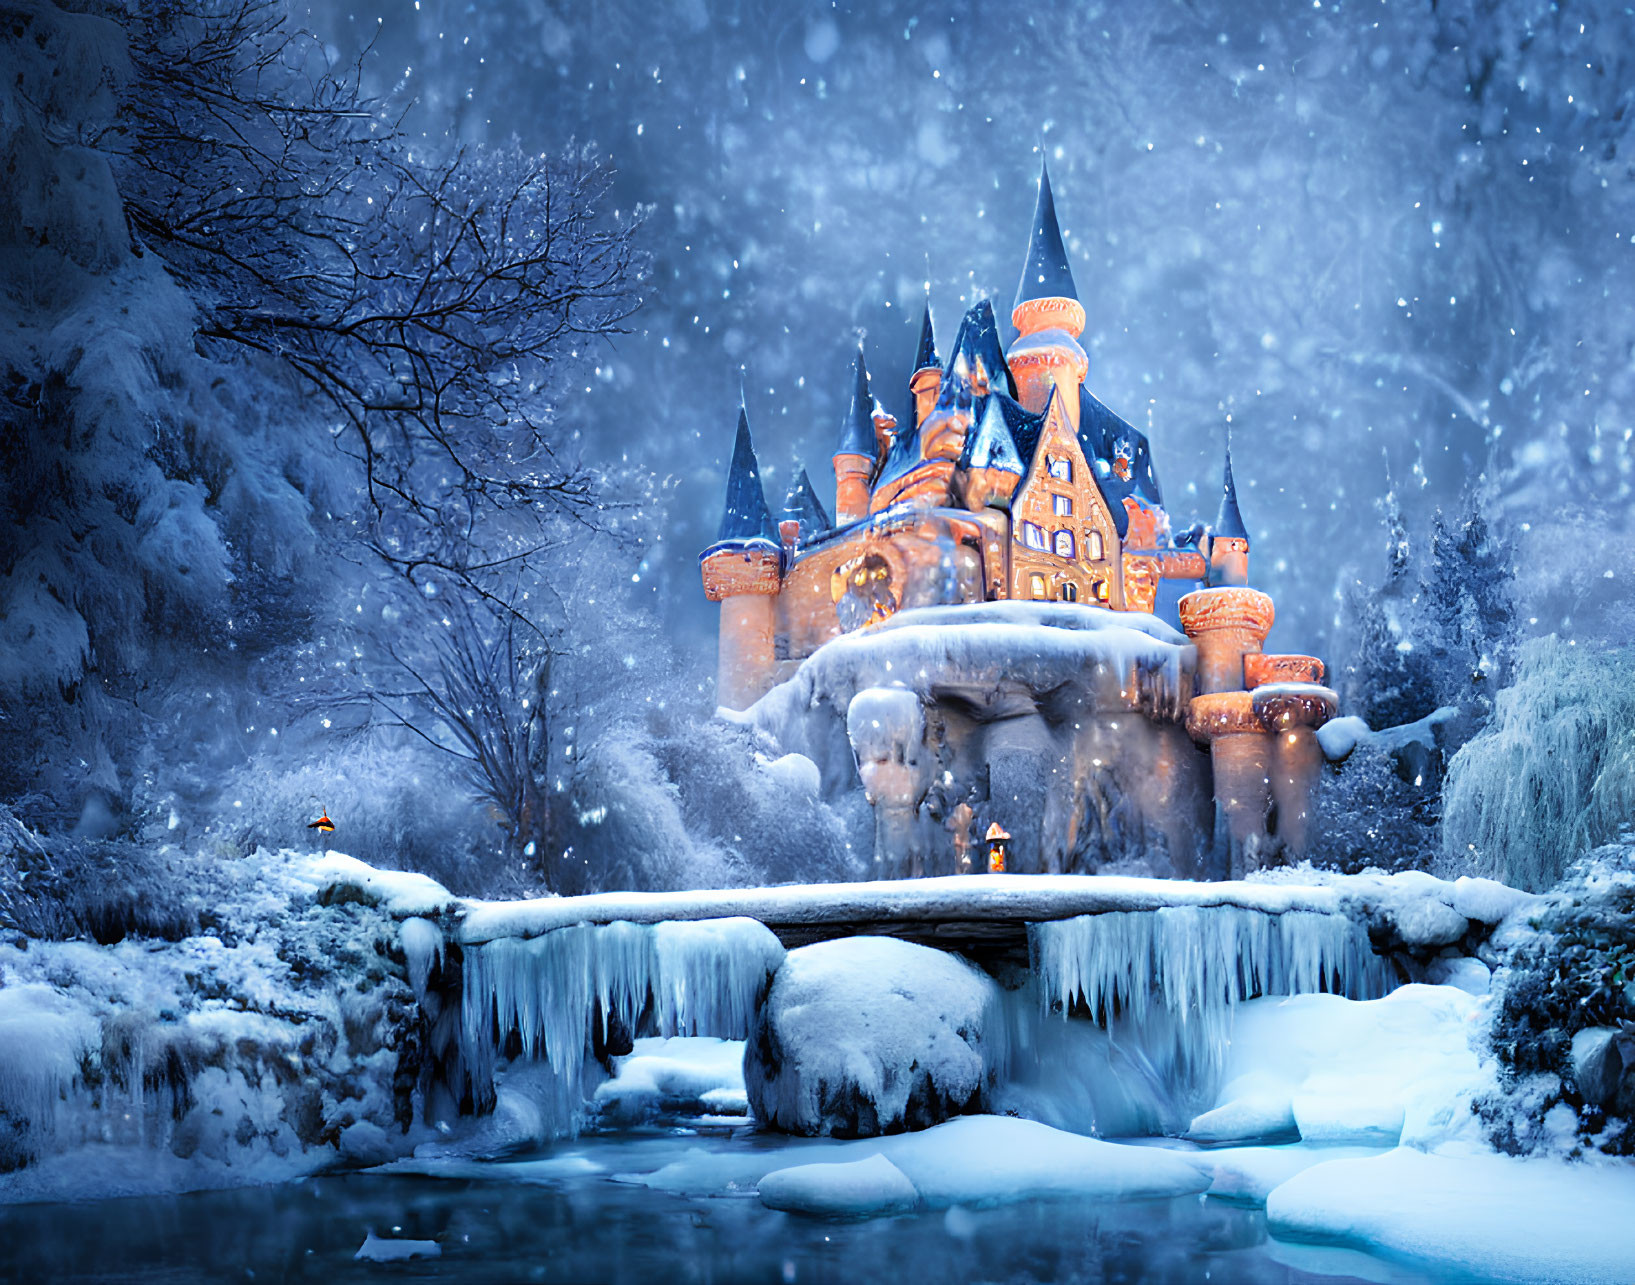 Enchanting fairy tale castle in snowy twilight landscape